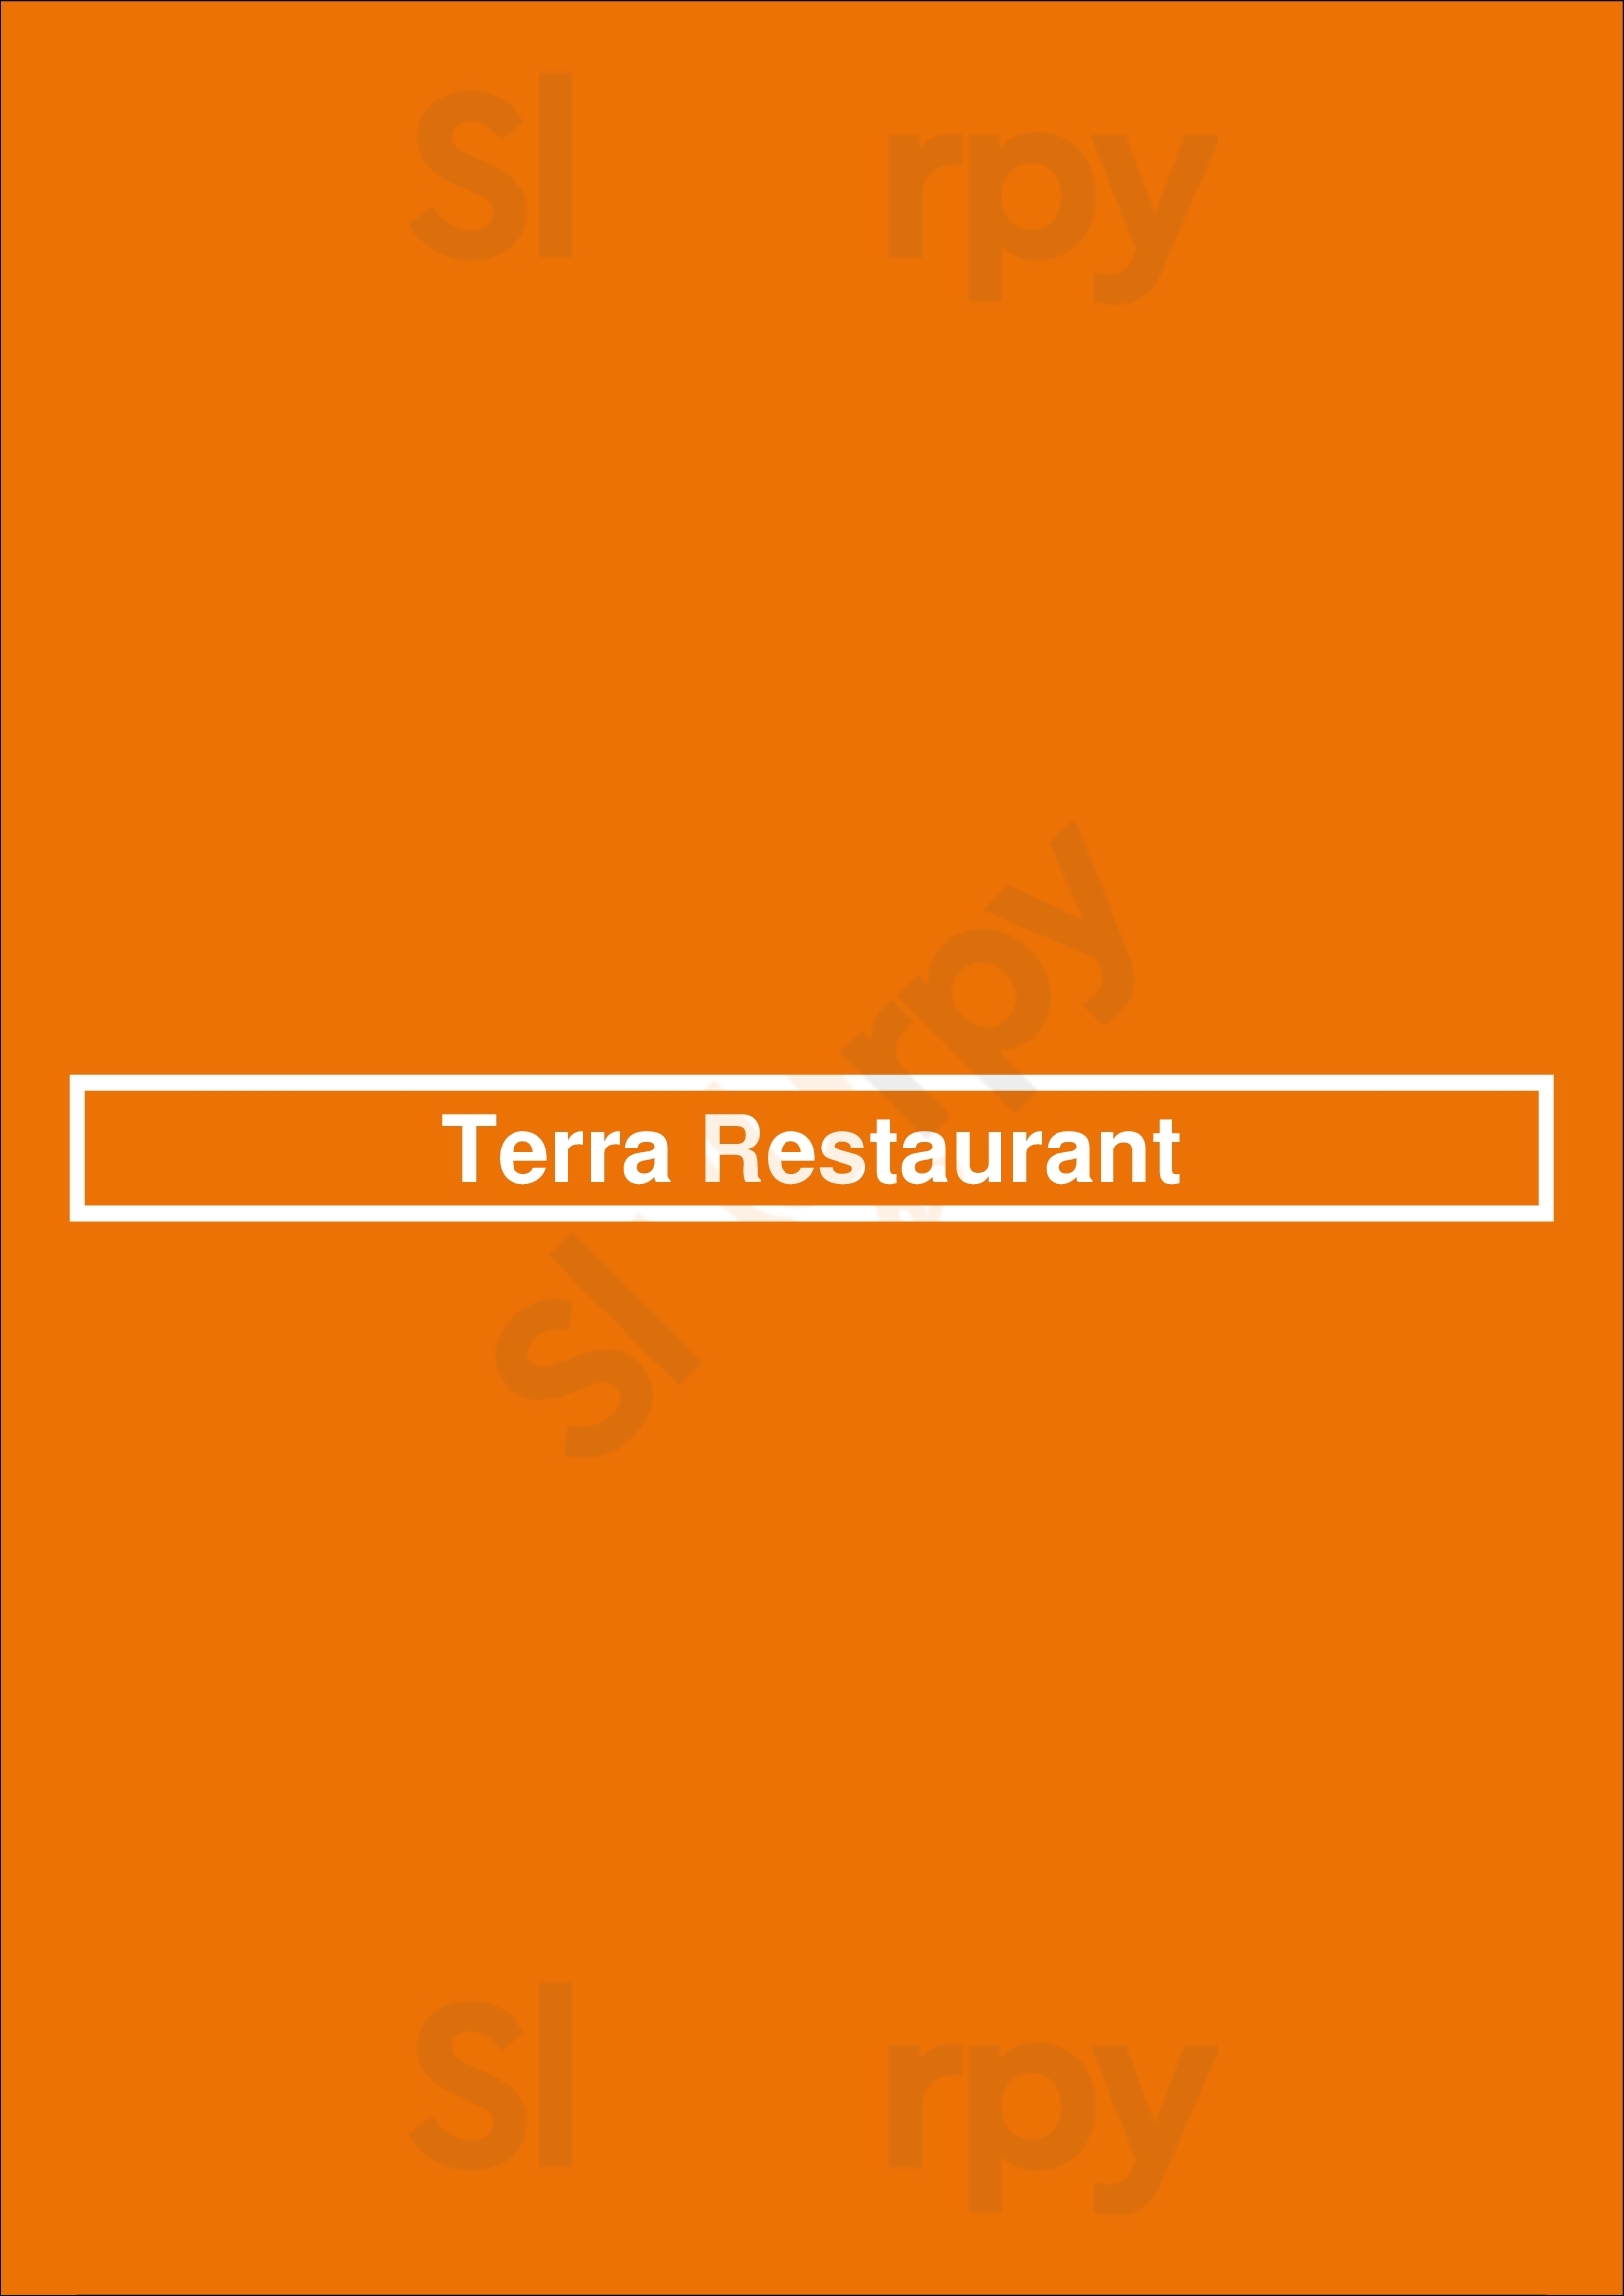 Terra Restaurant Kamloops Menu - 1